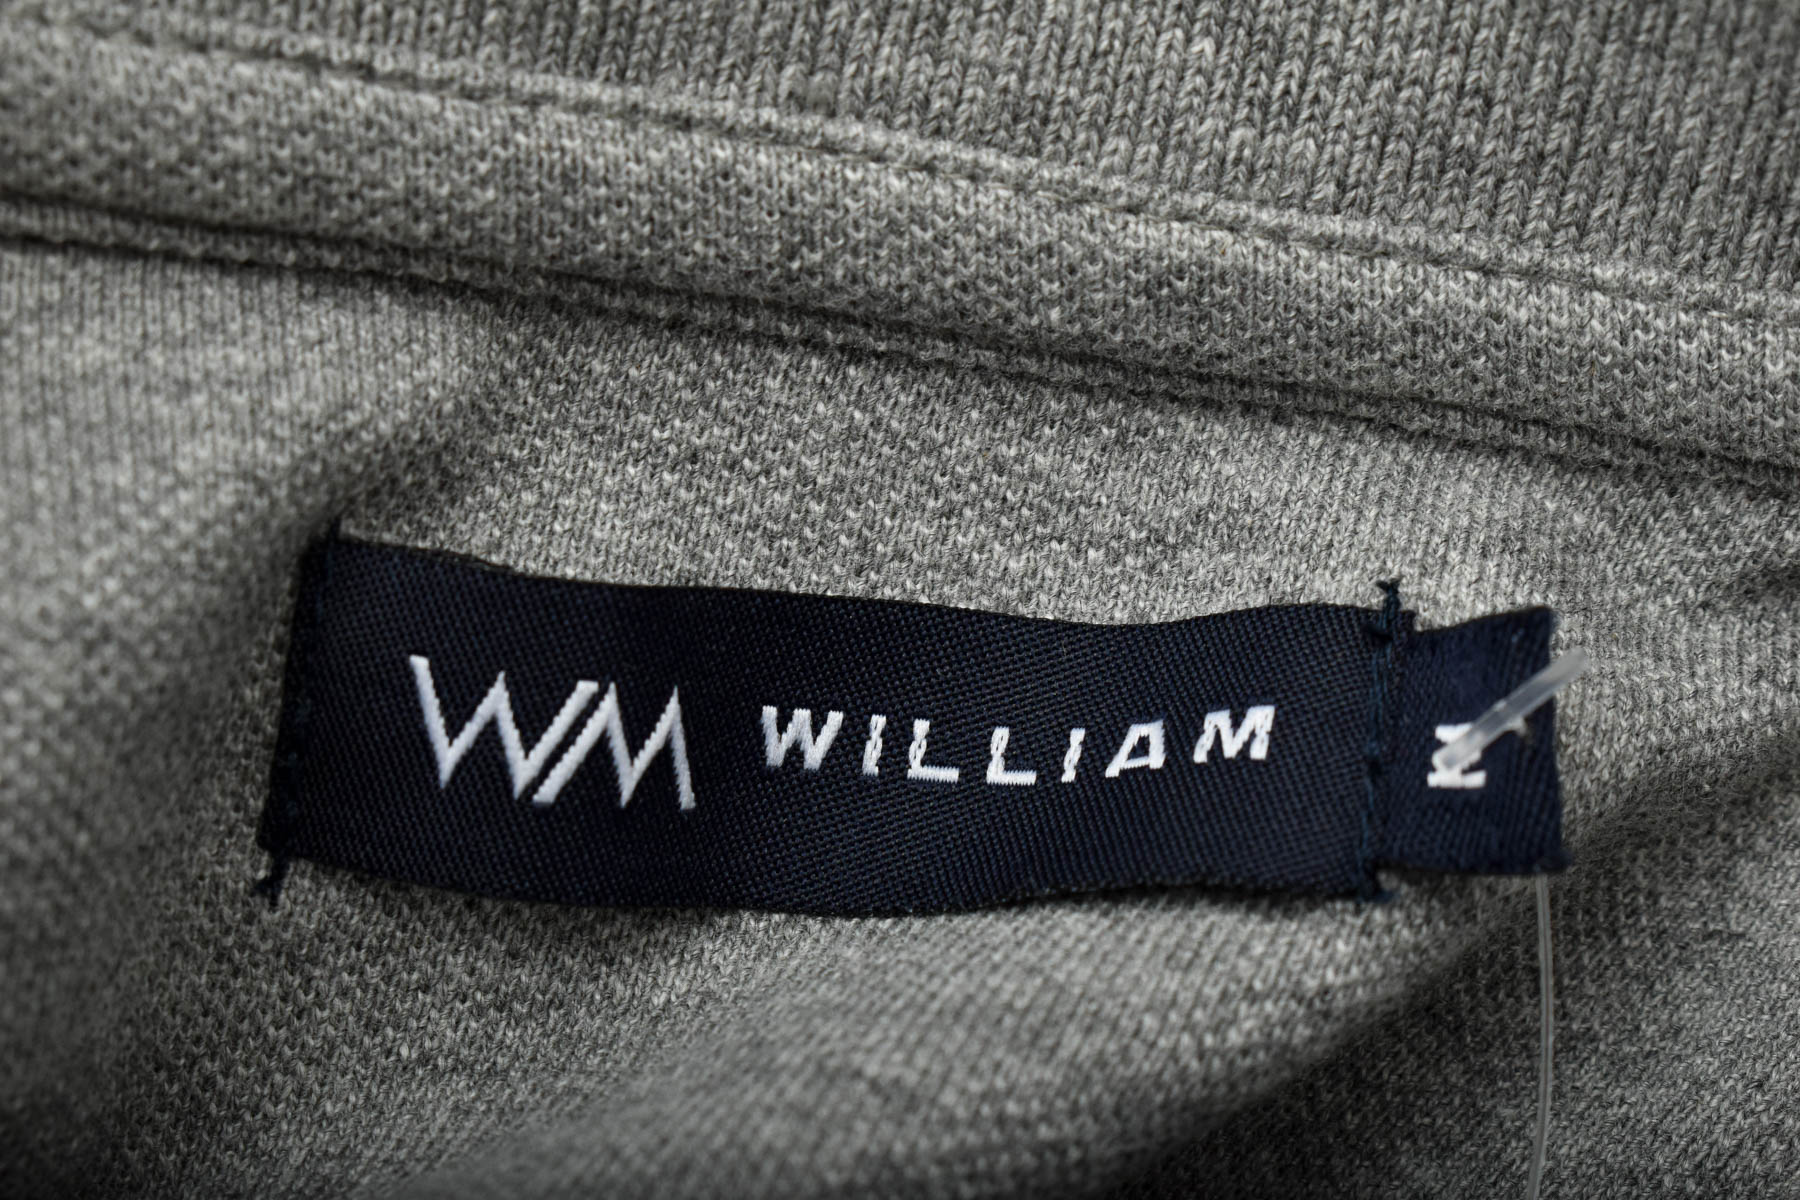 Pulover pentru bărbați - WM William - 2